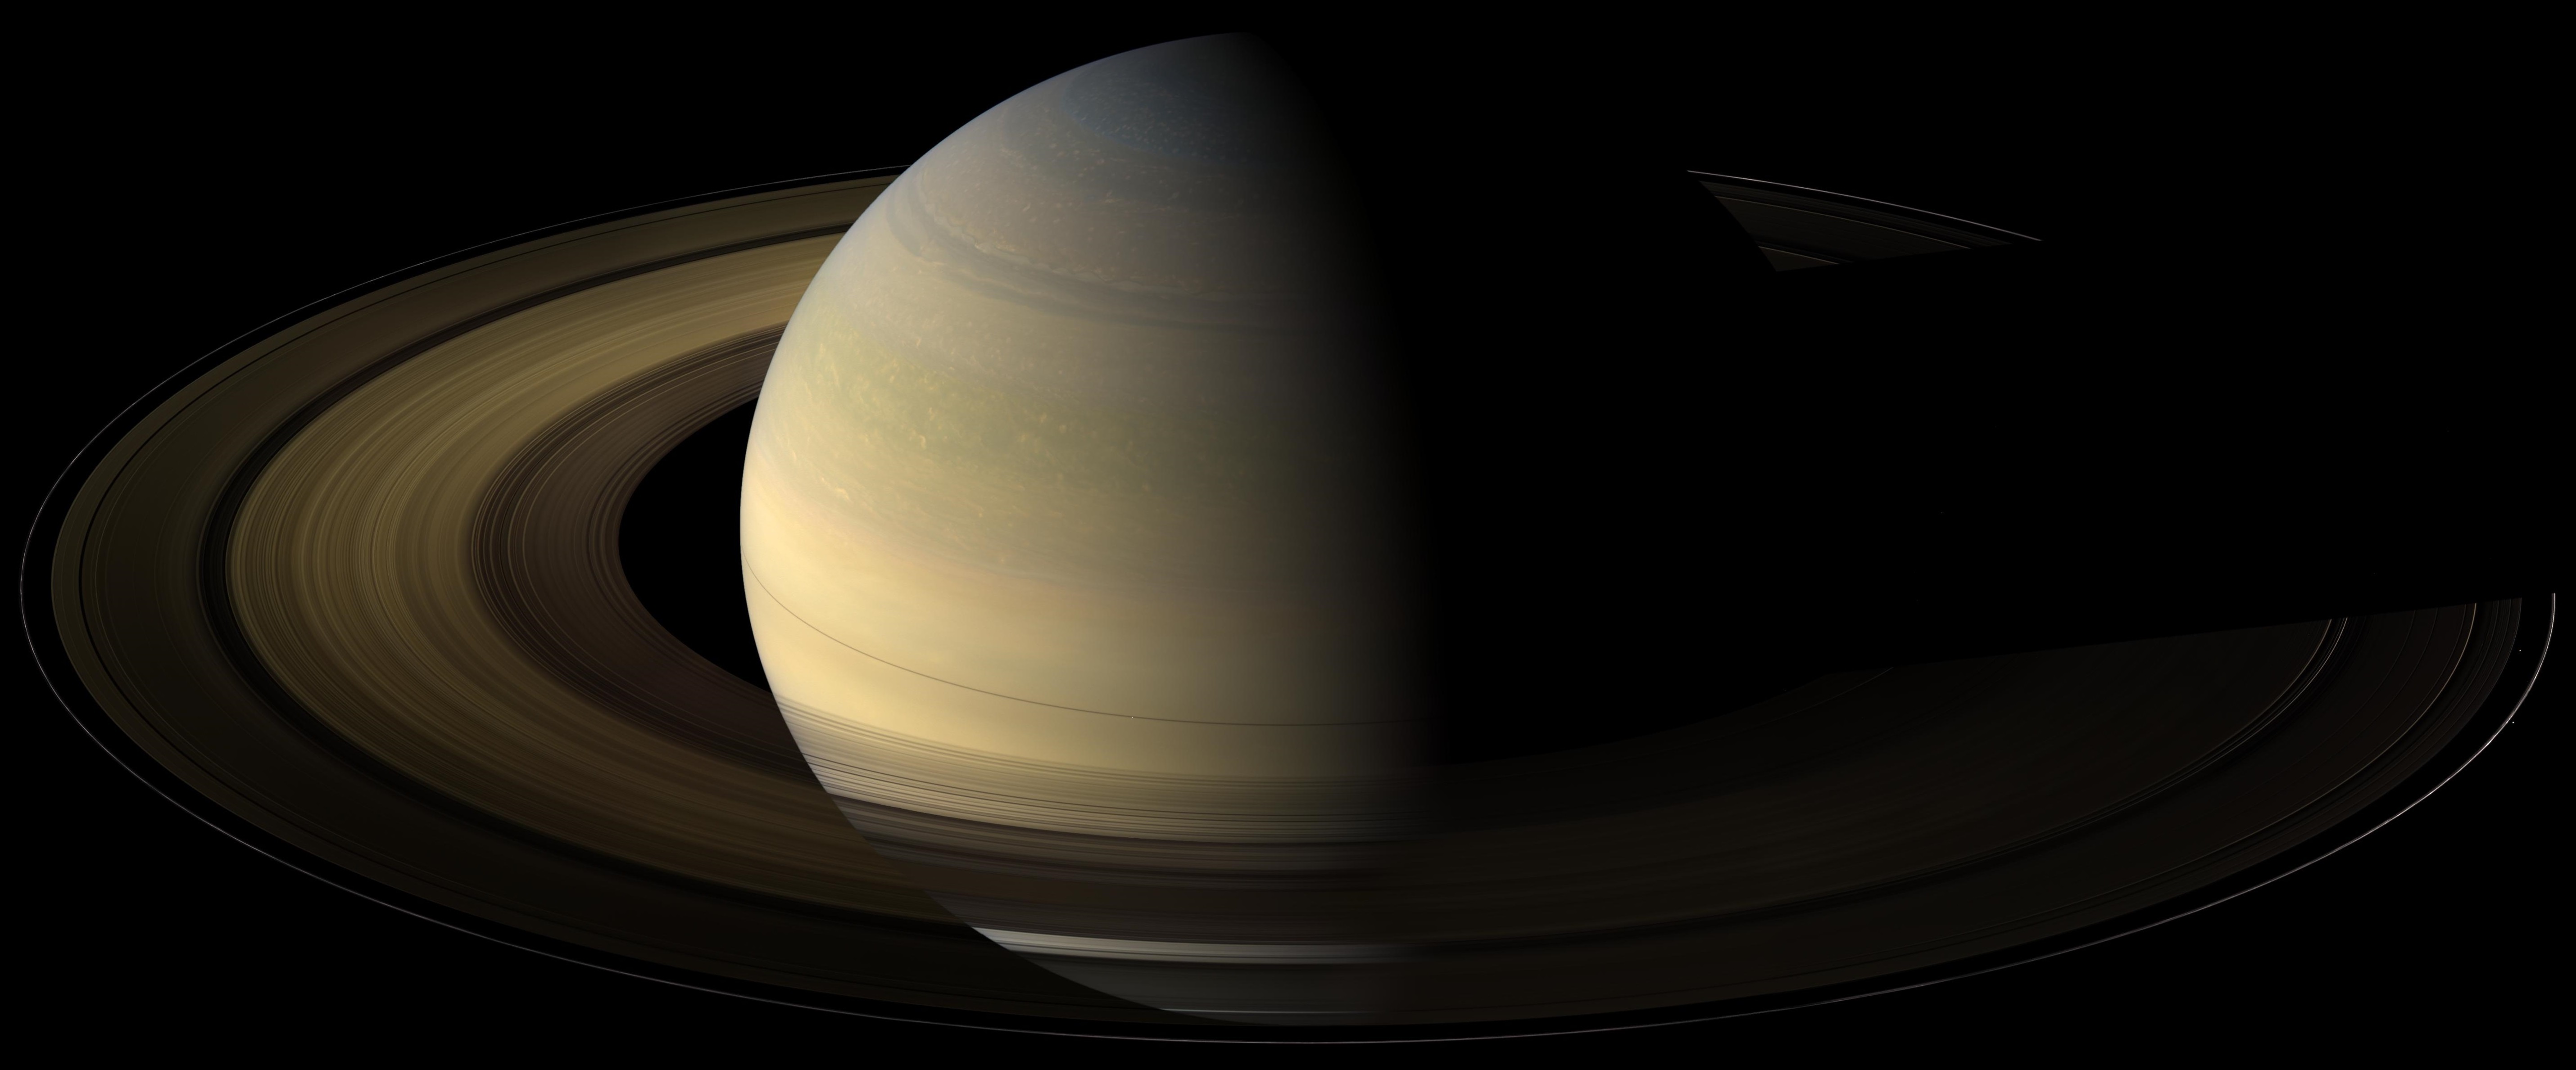 Saturn equinox photo